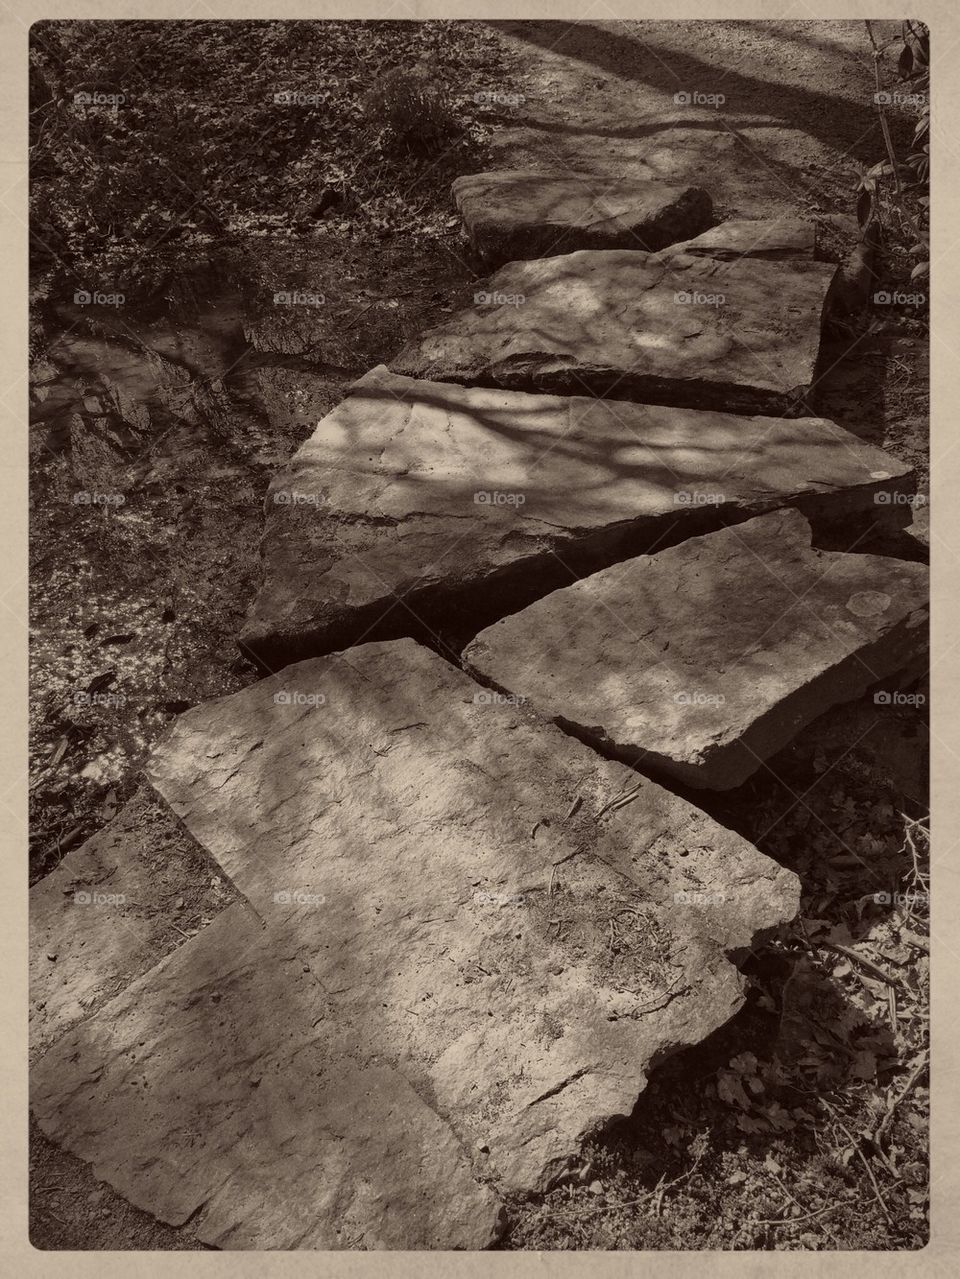 Step stones 